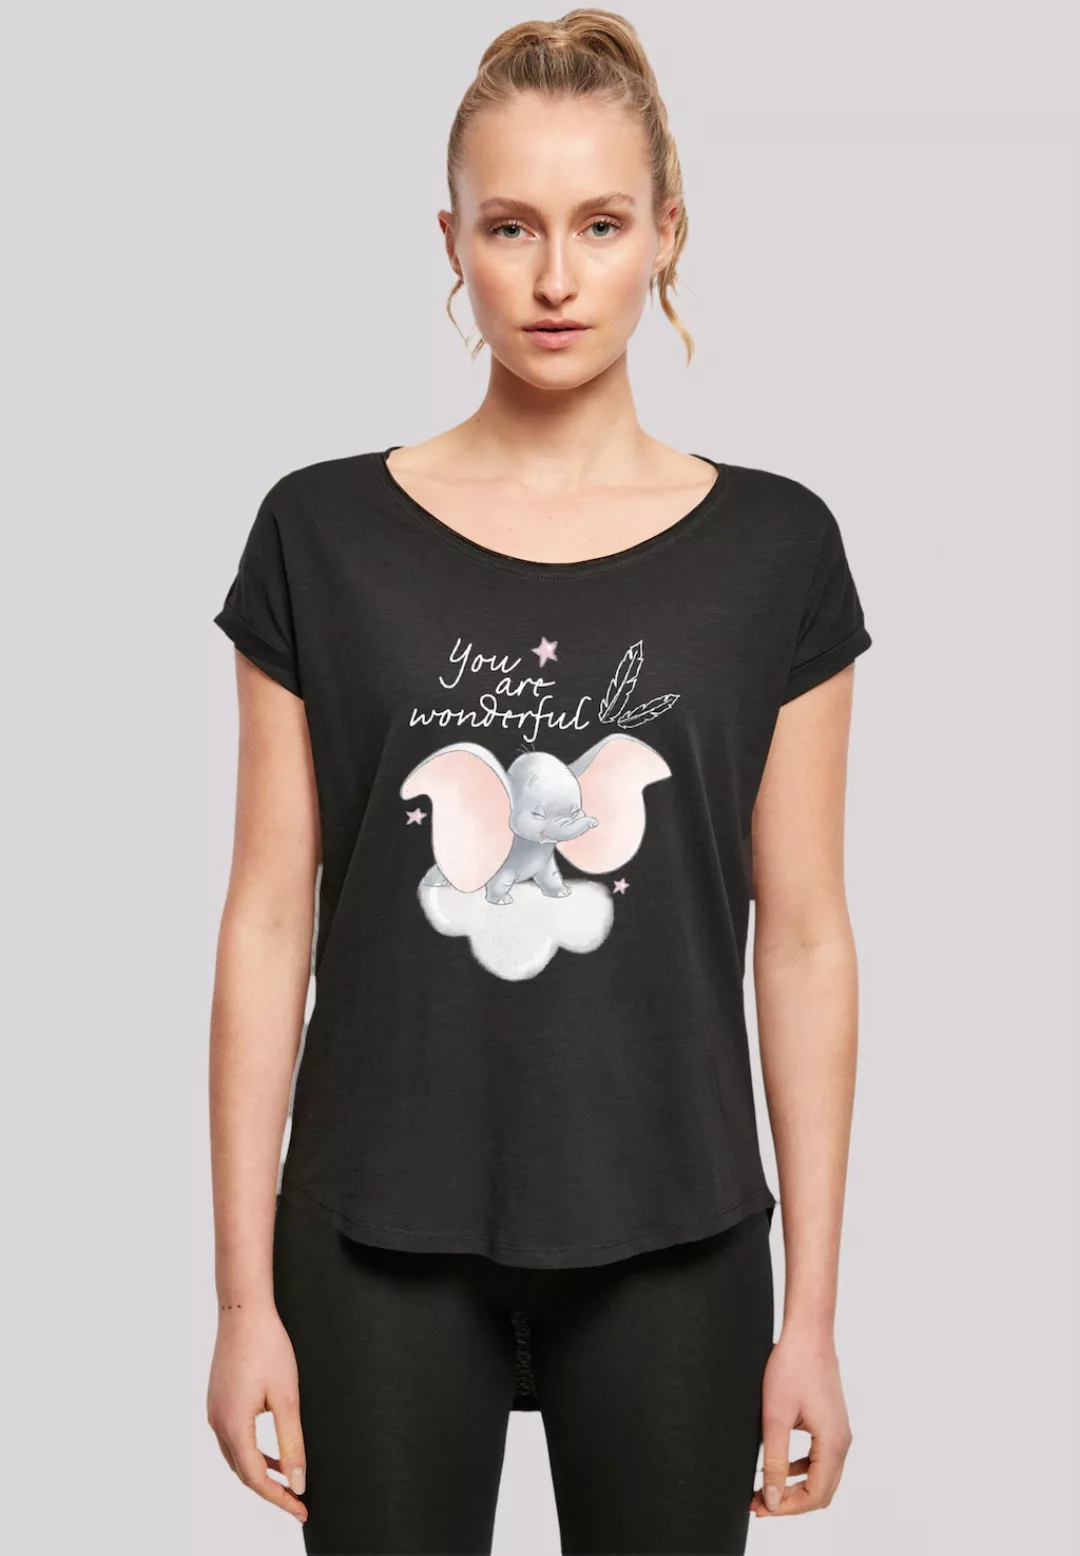 F4NT4STIC T-Shirt "Disney Dumbo You Are Wonderful", Premium Qualität günstig online kaufen